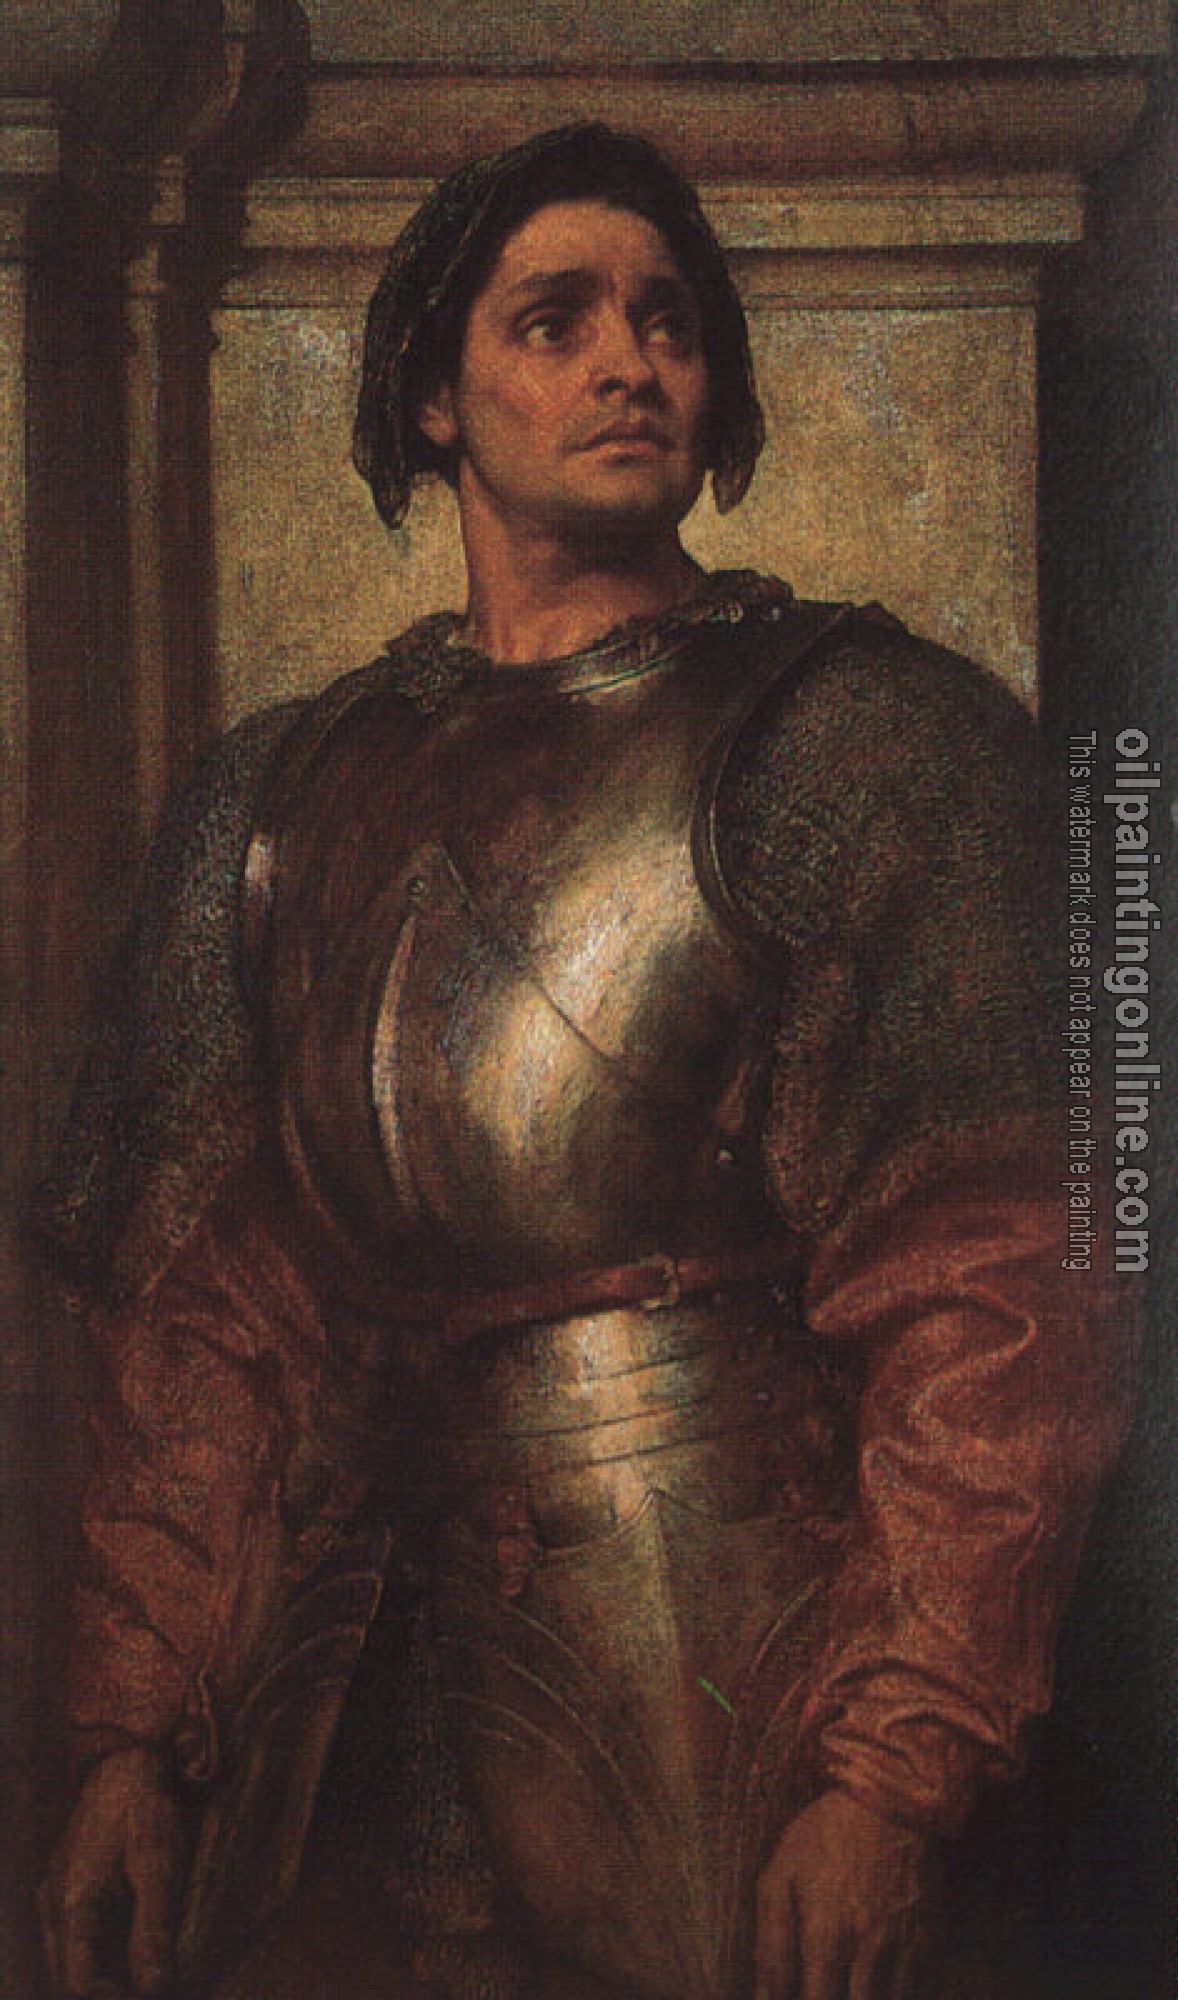 Leighton, Lord Frederick - A Condottiere